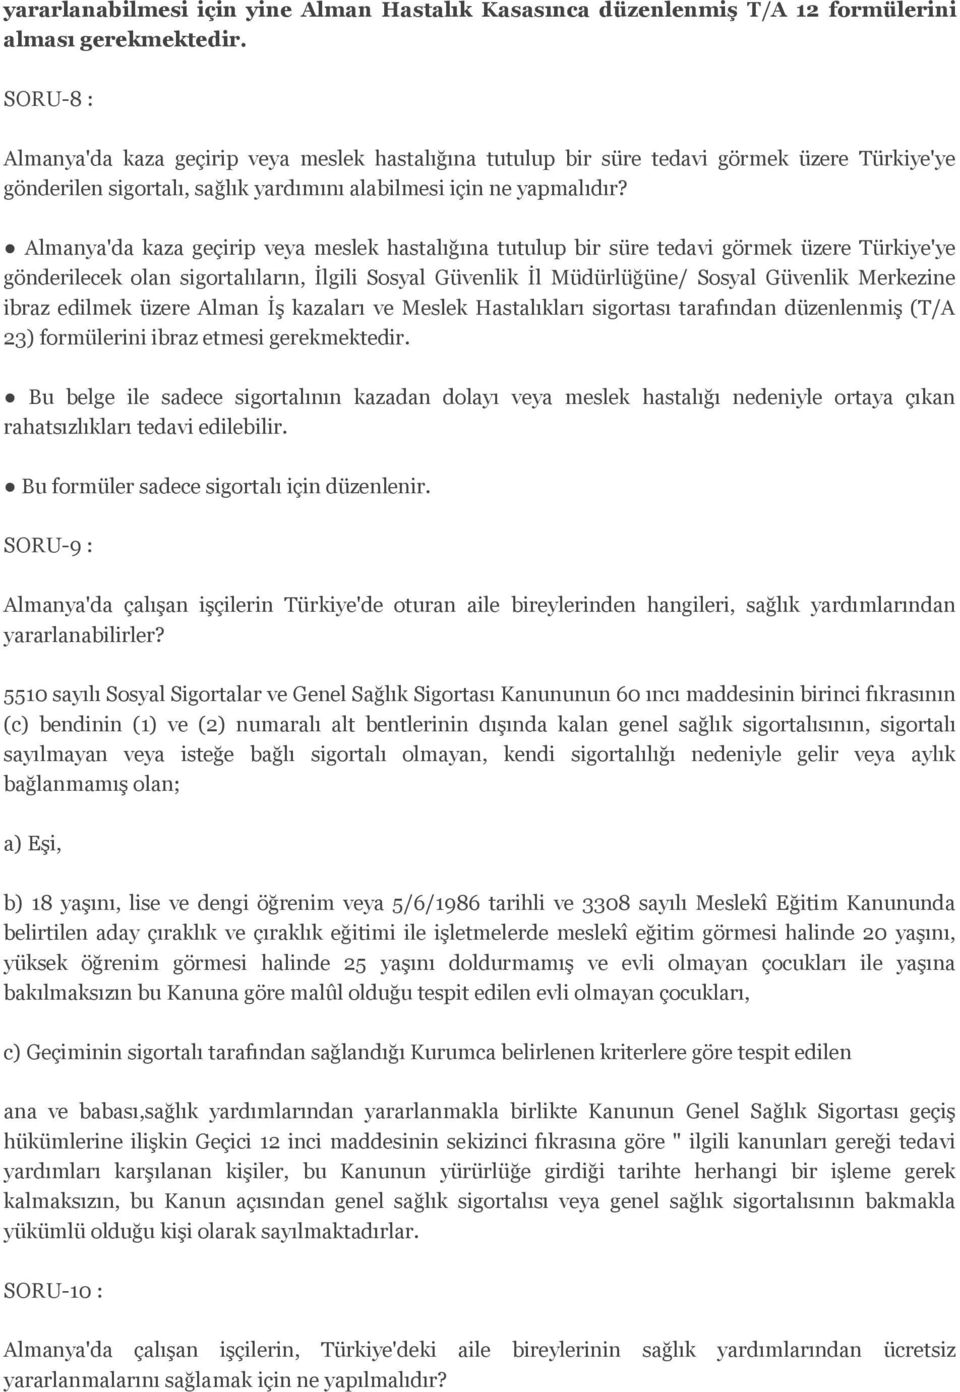 Almanya'da kaza geçirip veya meslek hastalığına tutulup bir süre tedavi görmek üzere Türkiye'ye gönderilecek olan sigortalıların, İlgili Sosyal Güvenlik İl Müdürlüğüne/ Sosyal Güvenlik Merkezine